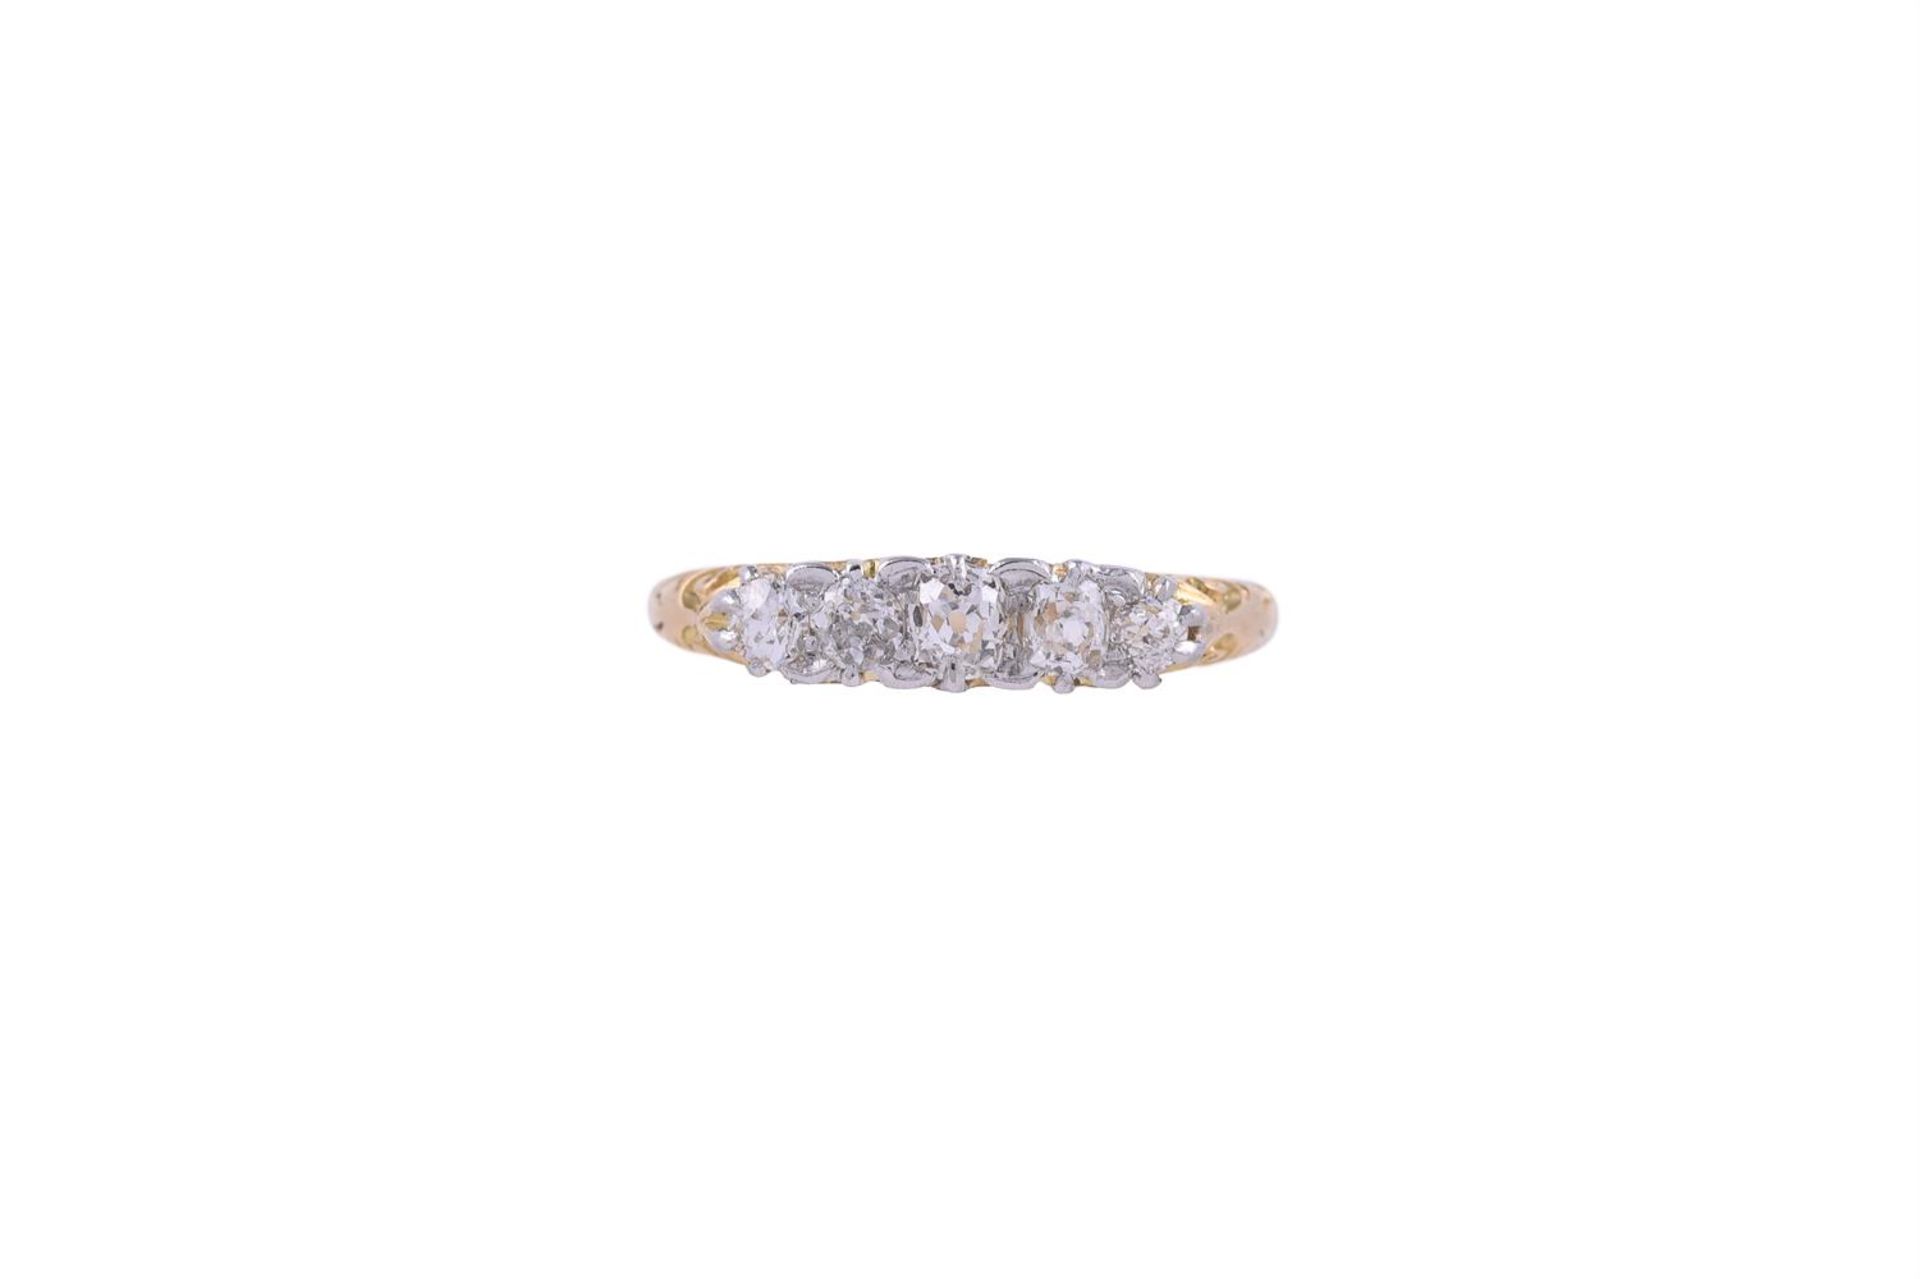 A LATE VICTORIAN DIAMOND FIVE STONE RING, CIRCA 1900